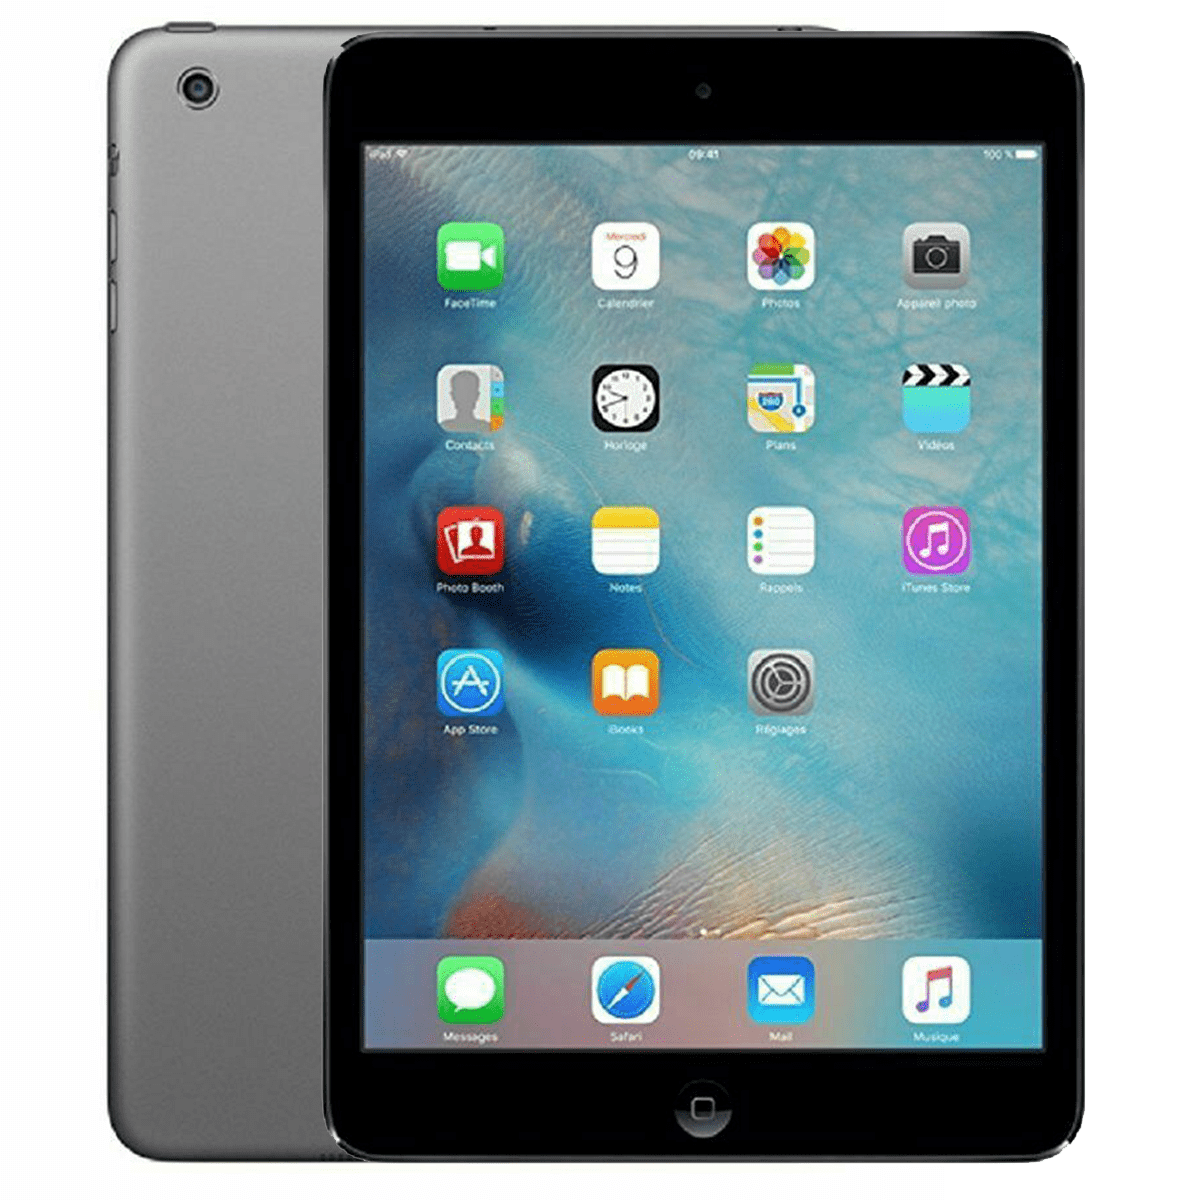 Apple iPad 2nd Gen Tablet Argento 16GB 9.7" A1395 Wi-Fi 1yr GARANZIA caso Bundle 